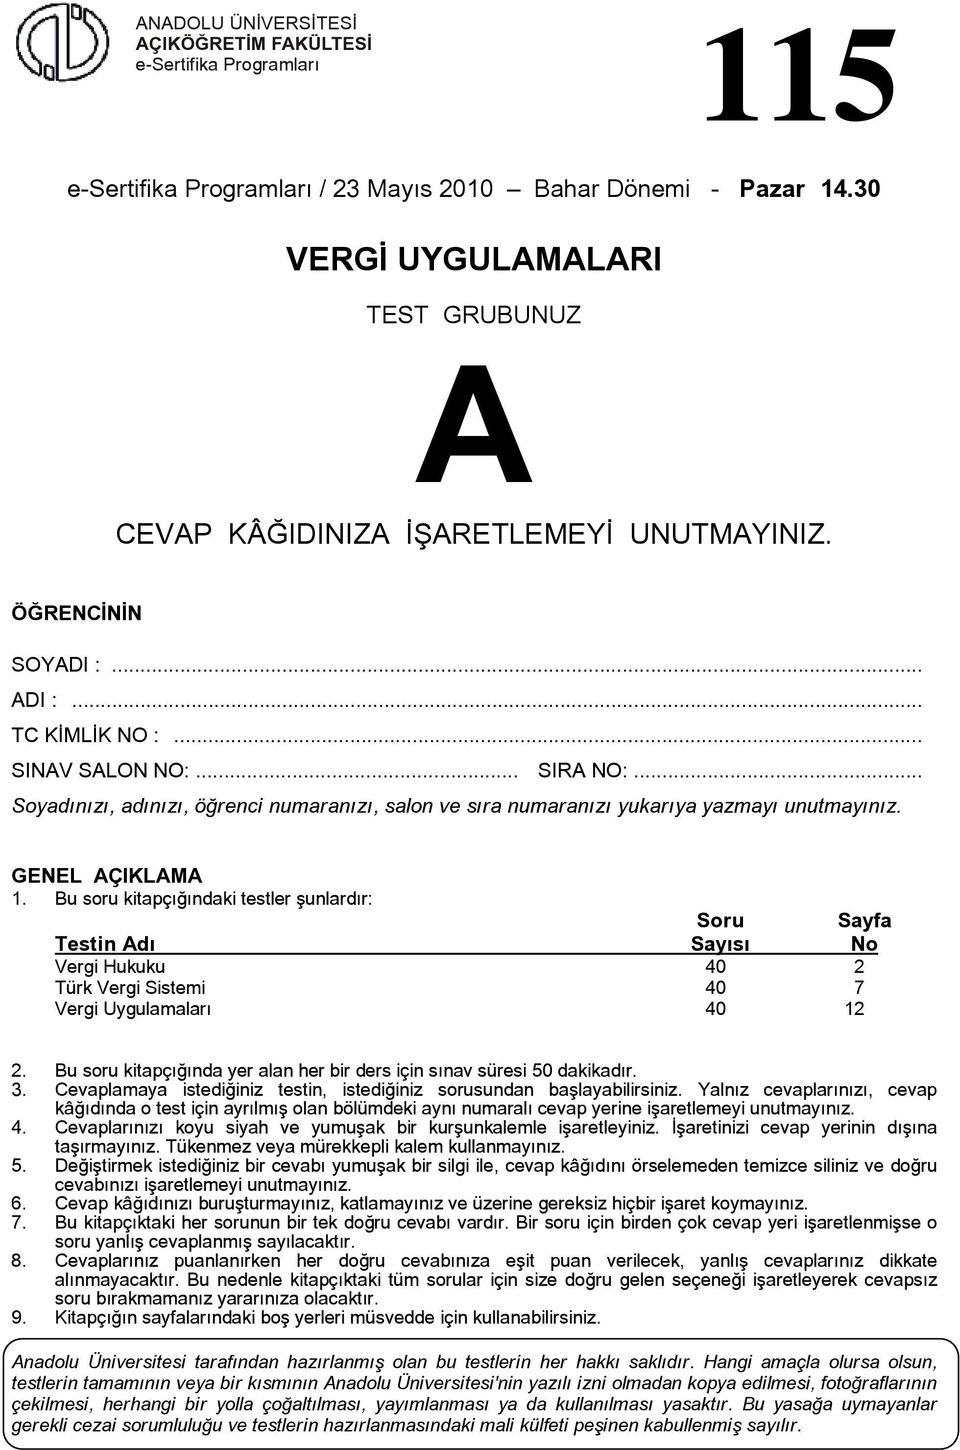 u soru kitapçığındaki testler şunlardır: Soru Sayfa Testin dı Sayısı No Vergi Hukuku 40 2 Türk Vergi Sistemi 40 7 Vergi Uygulamaları 40 12 2.